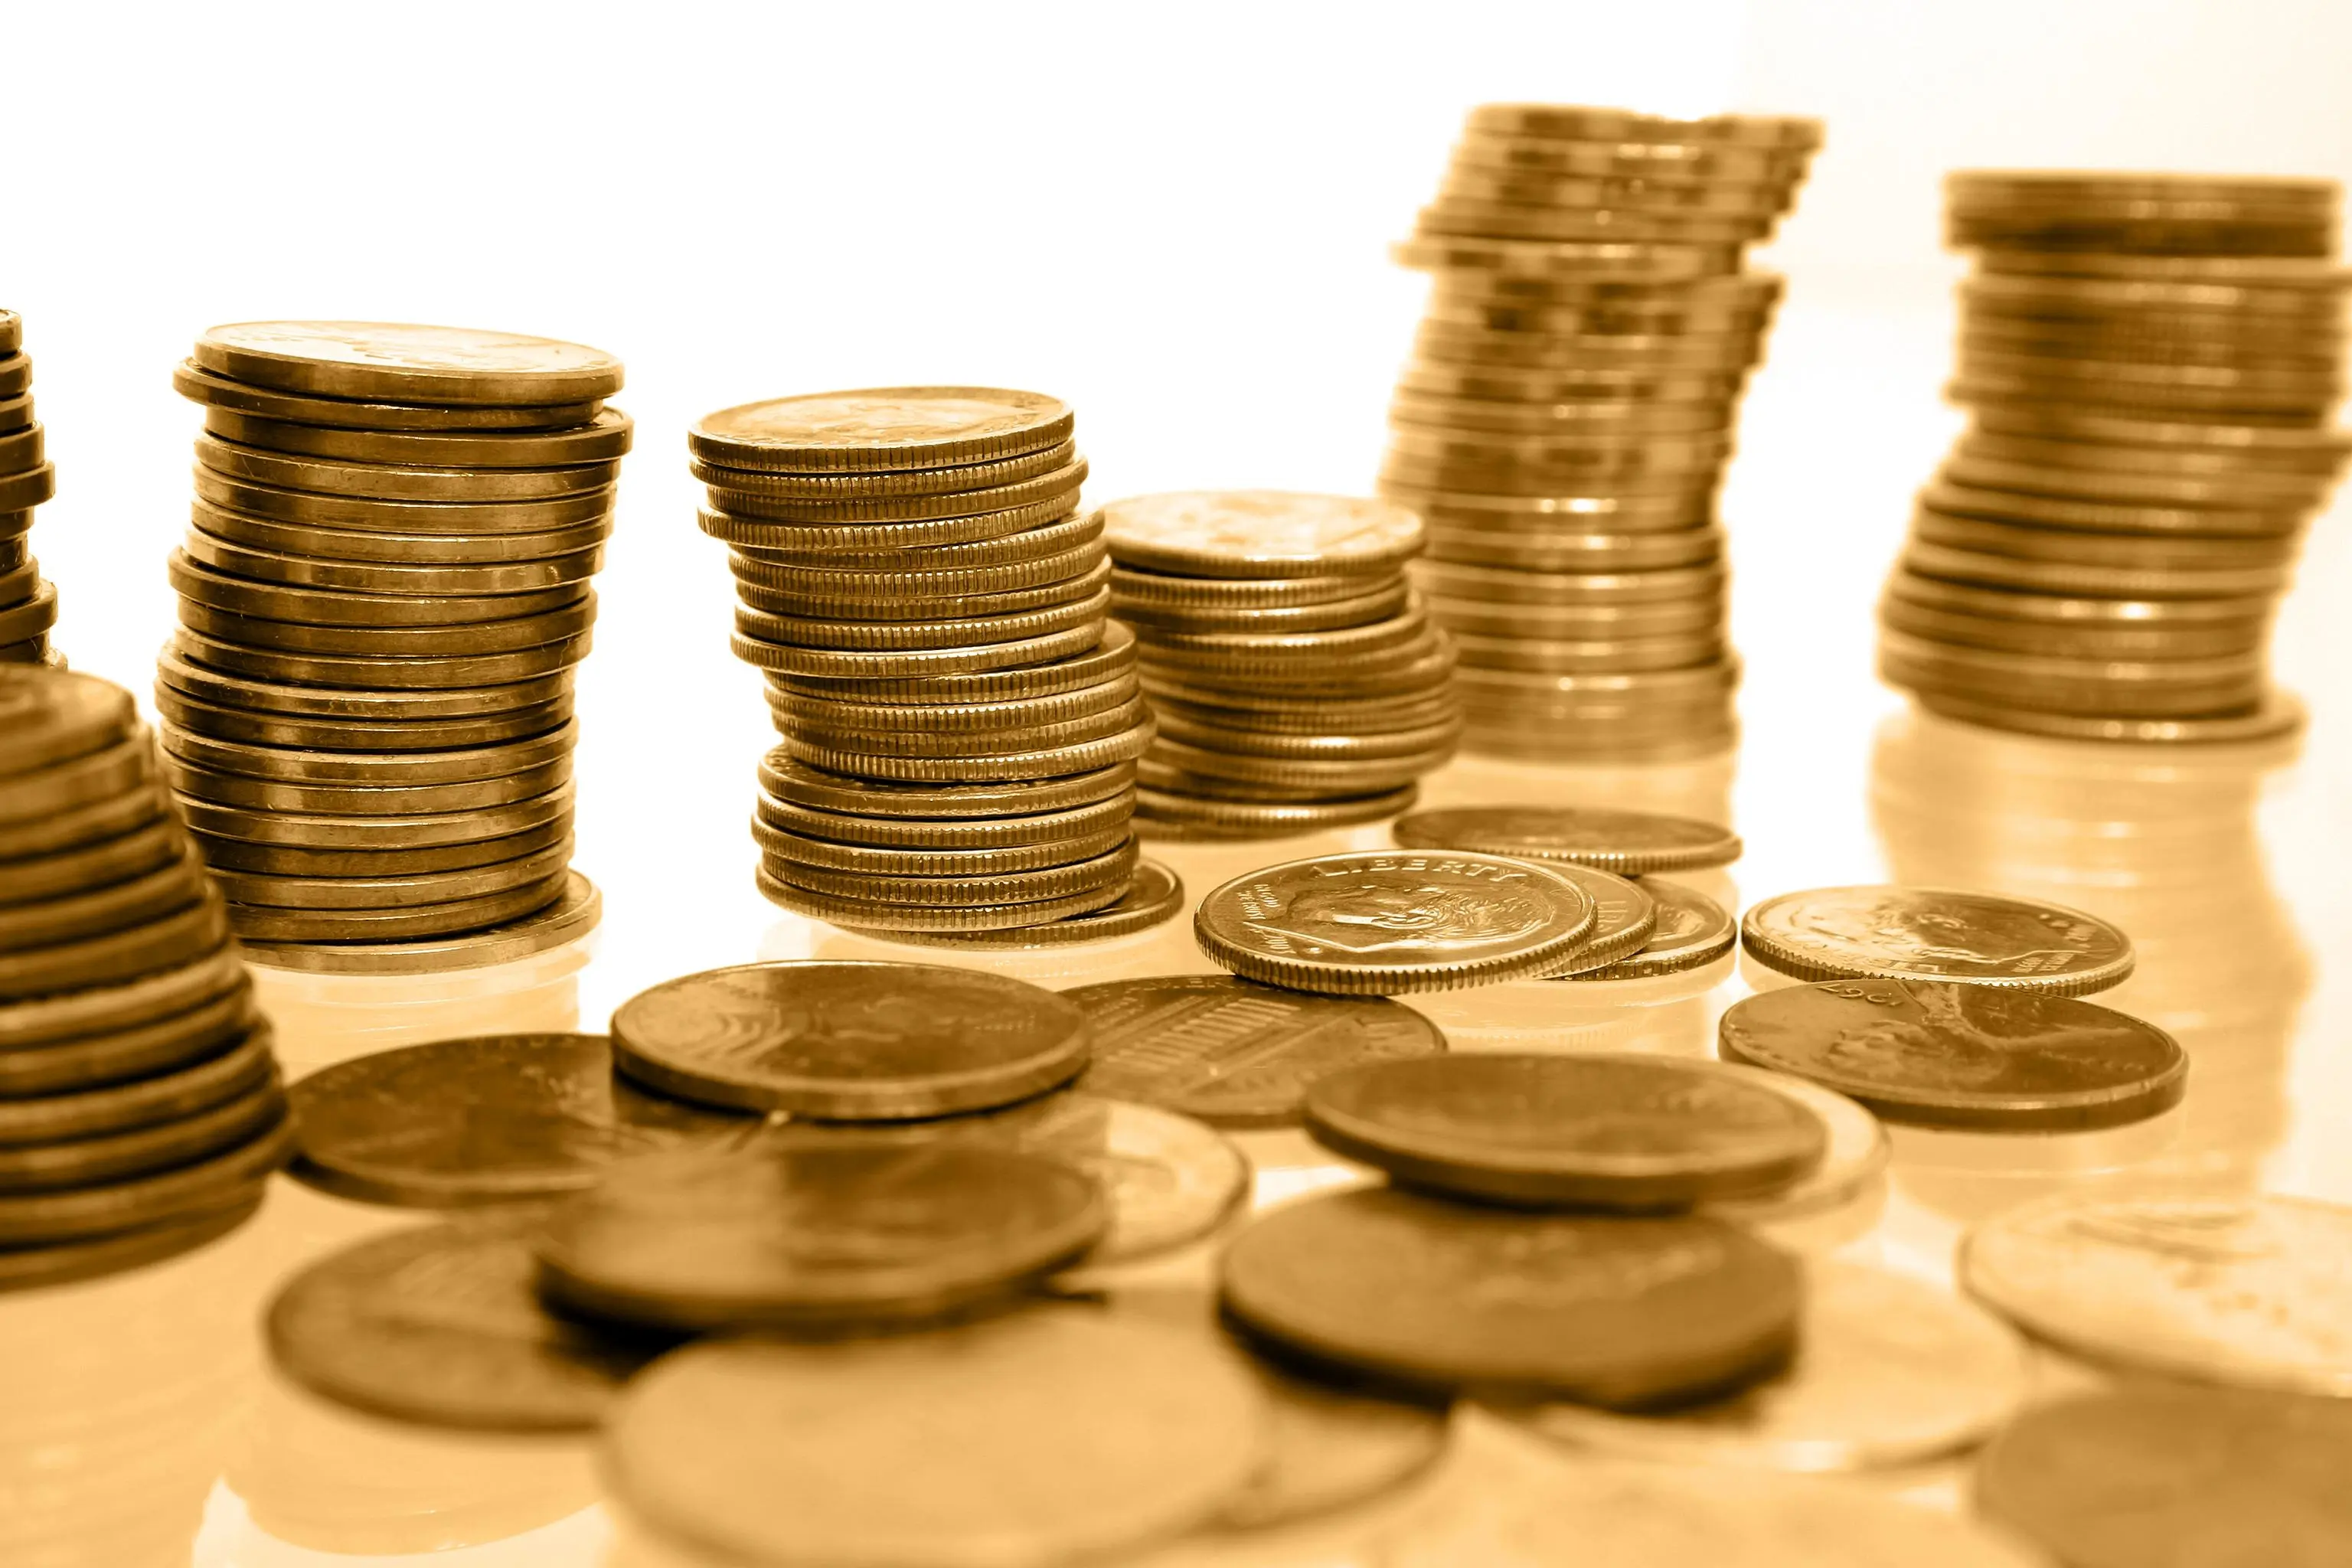 قیمت سکه طرح جدید ۳۰ آذر ۱۳۹۹ به ۱۱ میلیون و ۸۵۰ هزار تومان رسید